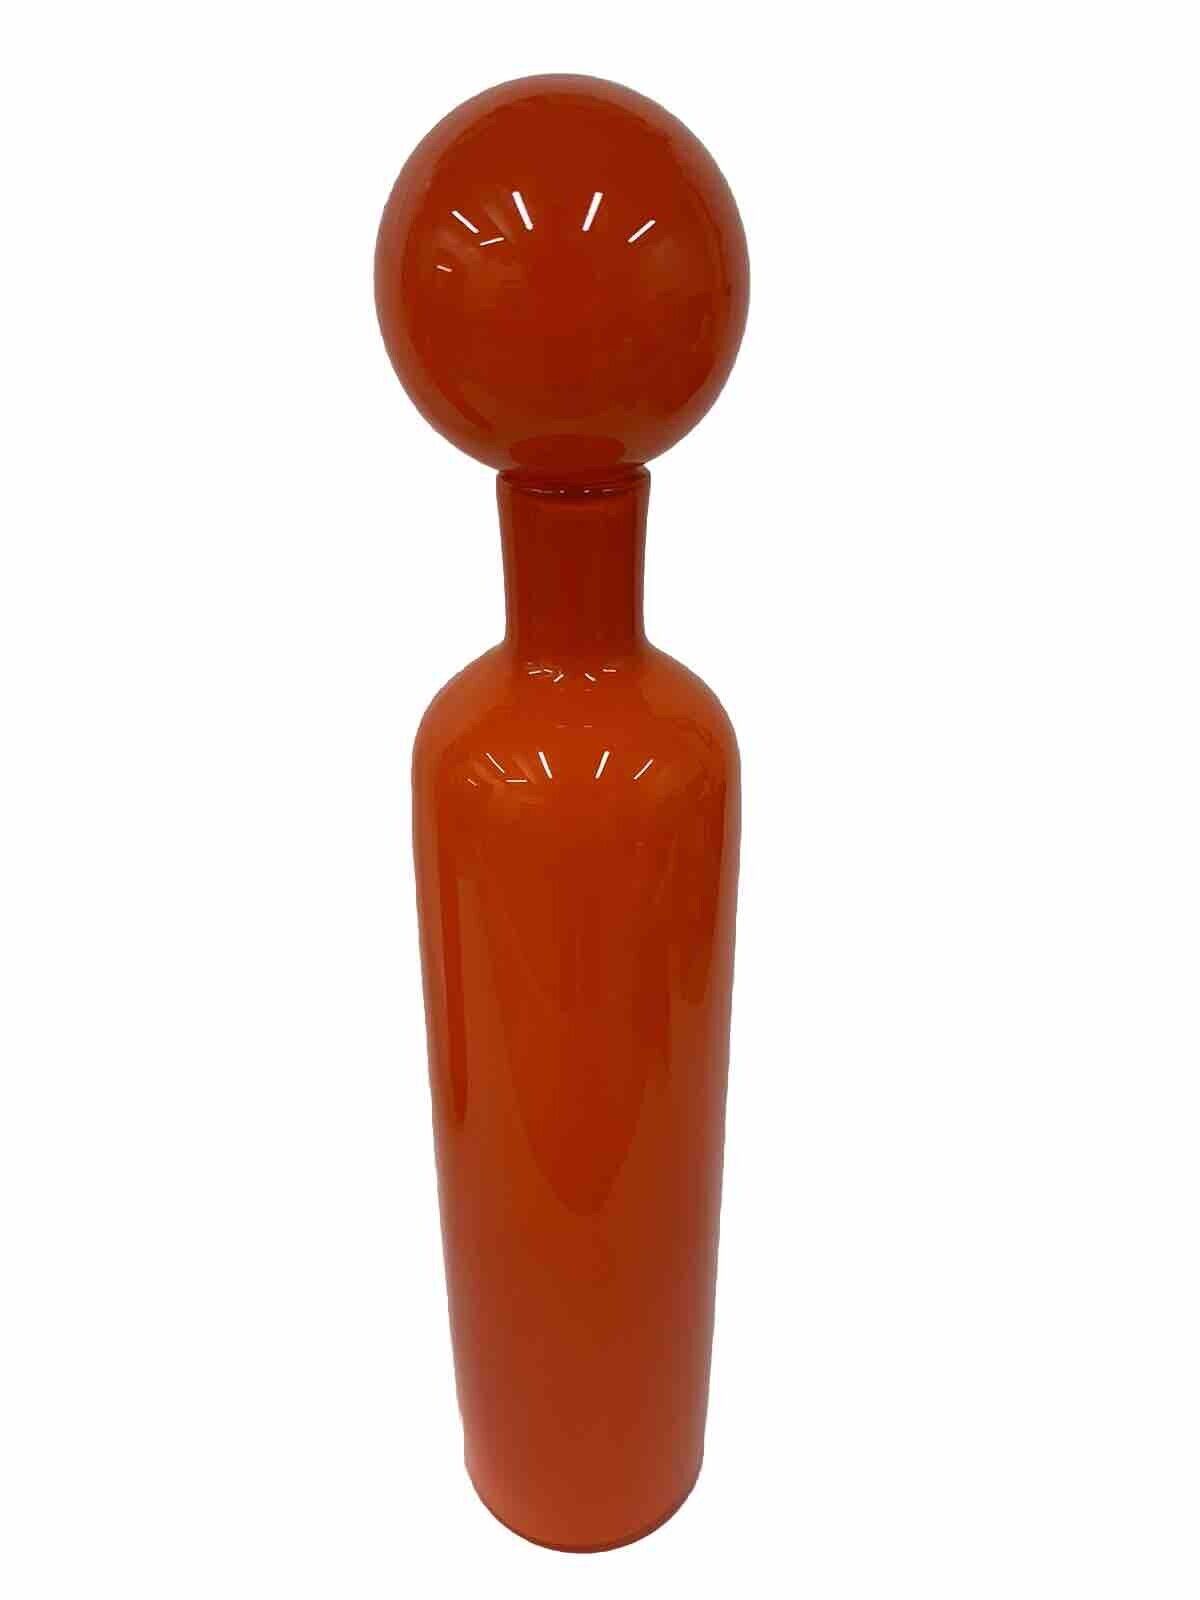 West Elm MCM Holmgaard Style Danish Orange Cased Glass Vase With Stopper